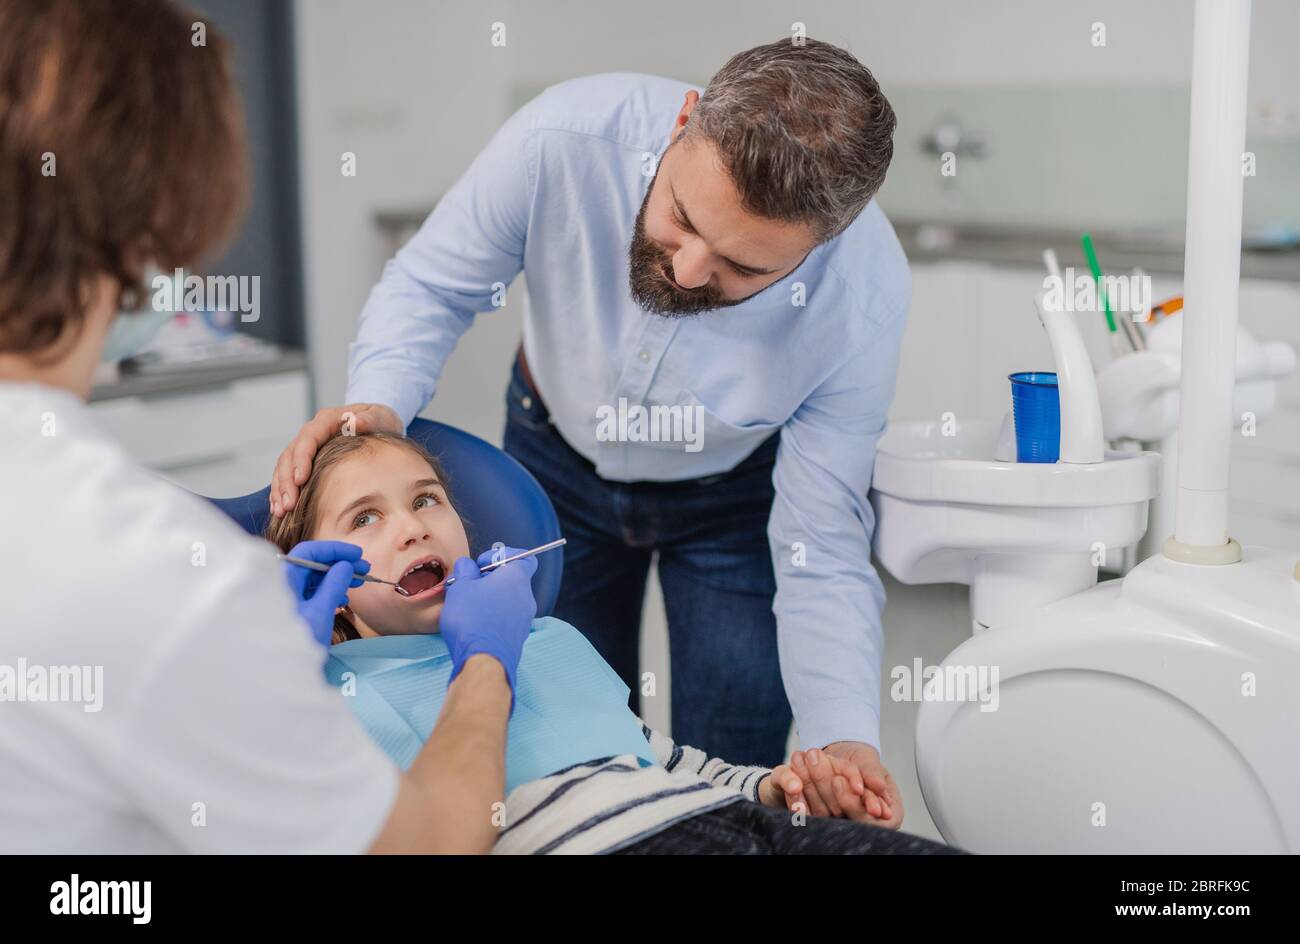 Daddy dental clinic